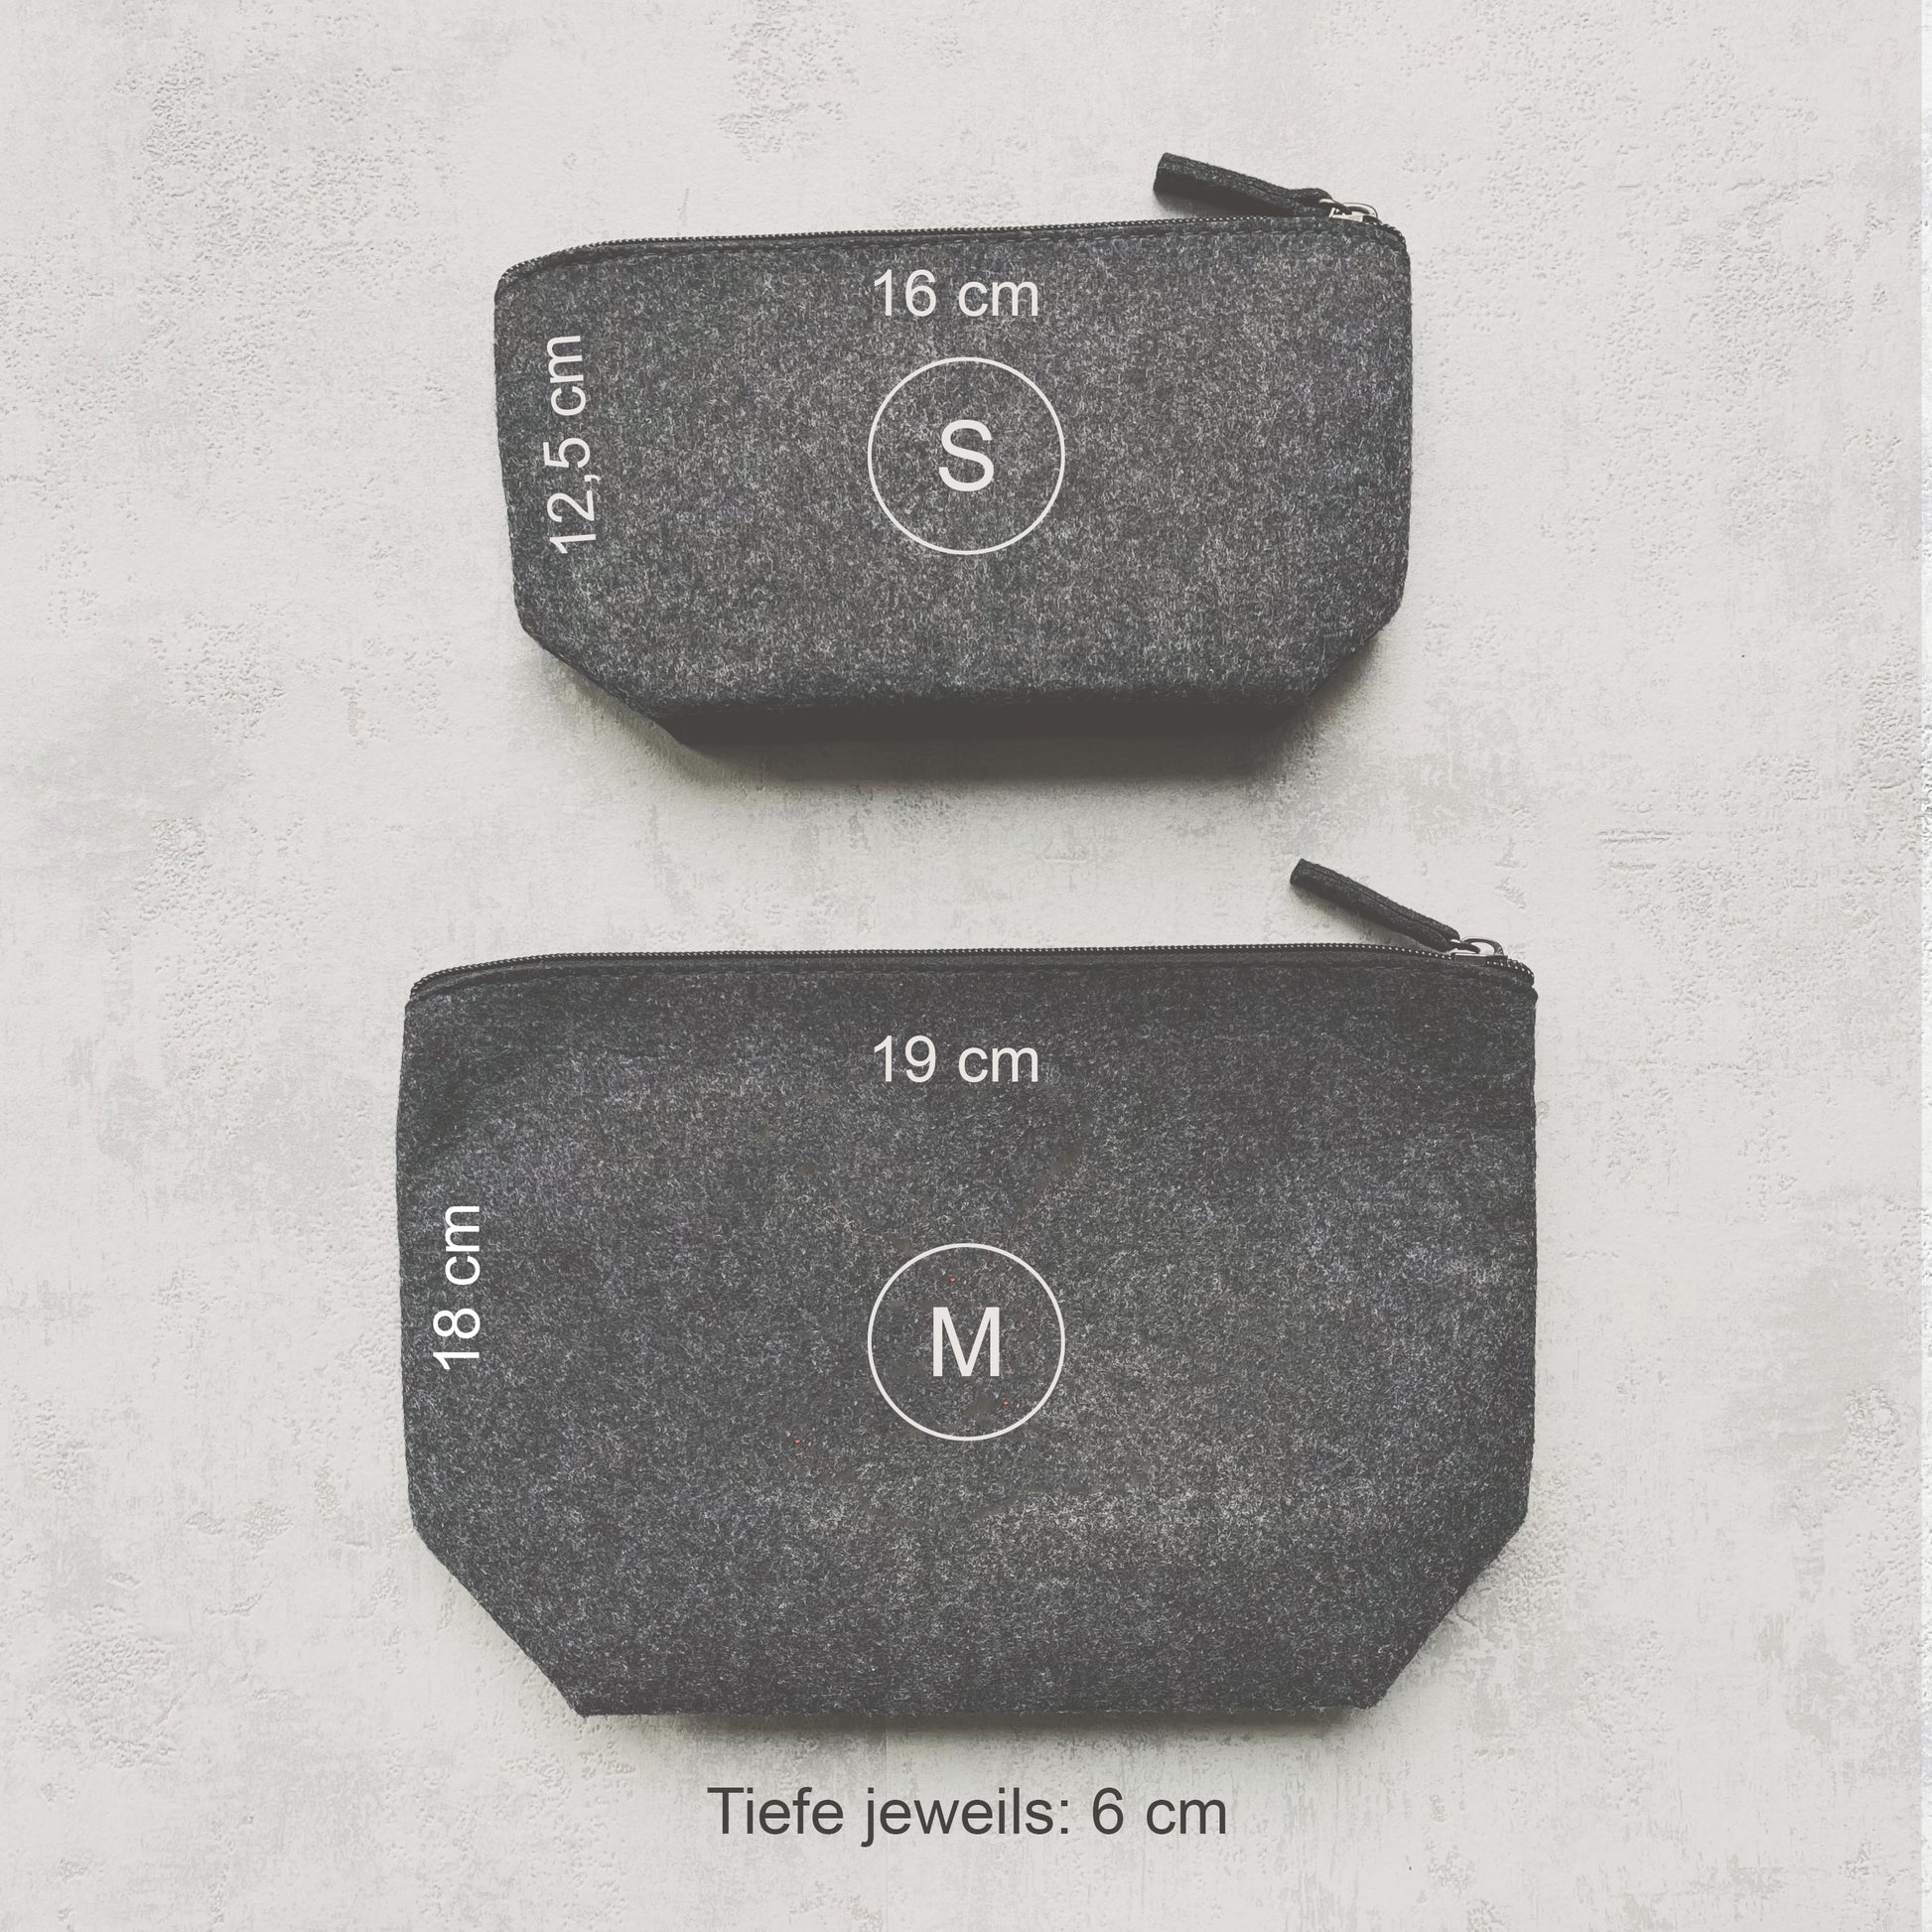 Größenvergleich zweier grauen Filztaschen in S (12,5 x 16 cm) und M (18 x 19 cm)